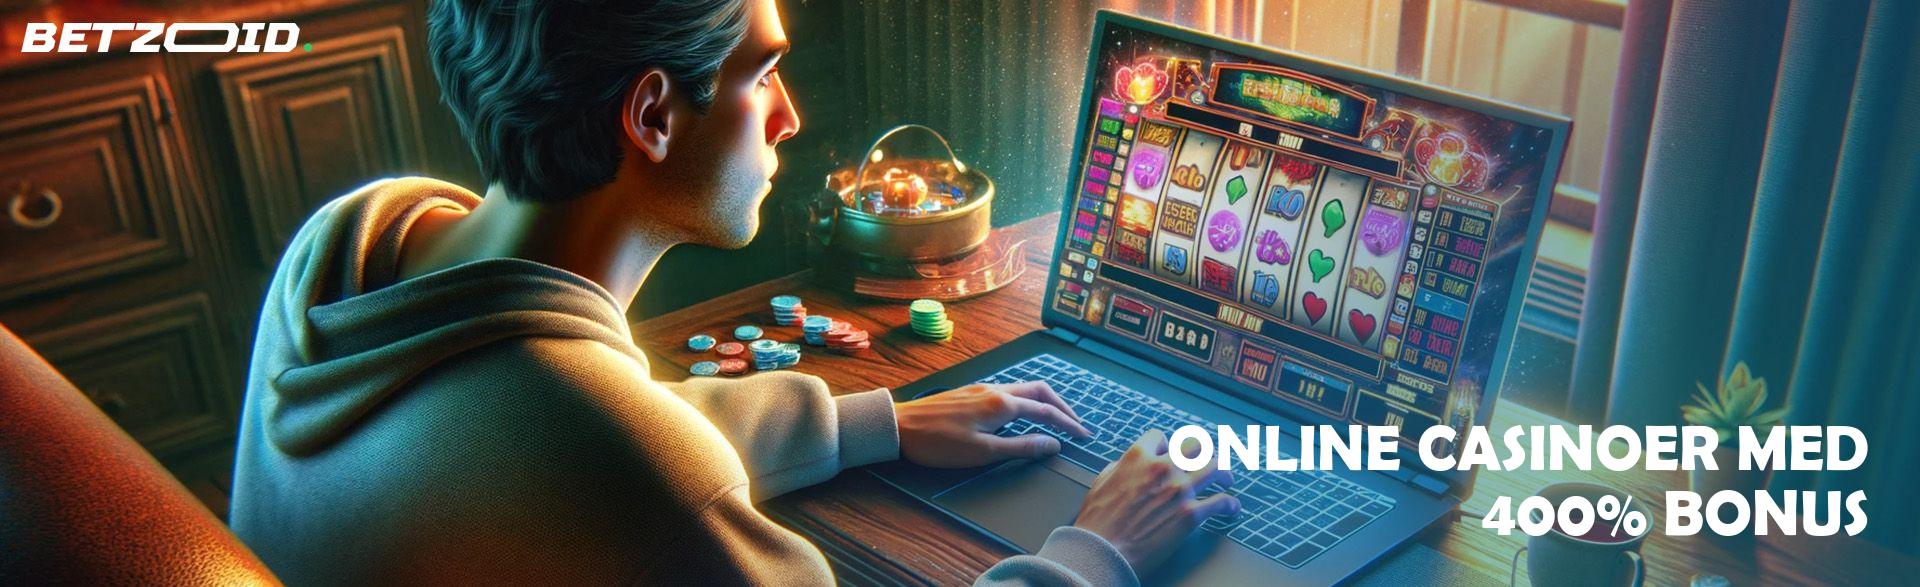 Online Casinoer med 400% Bonus.